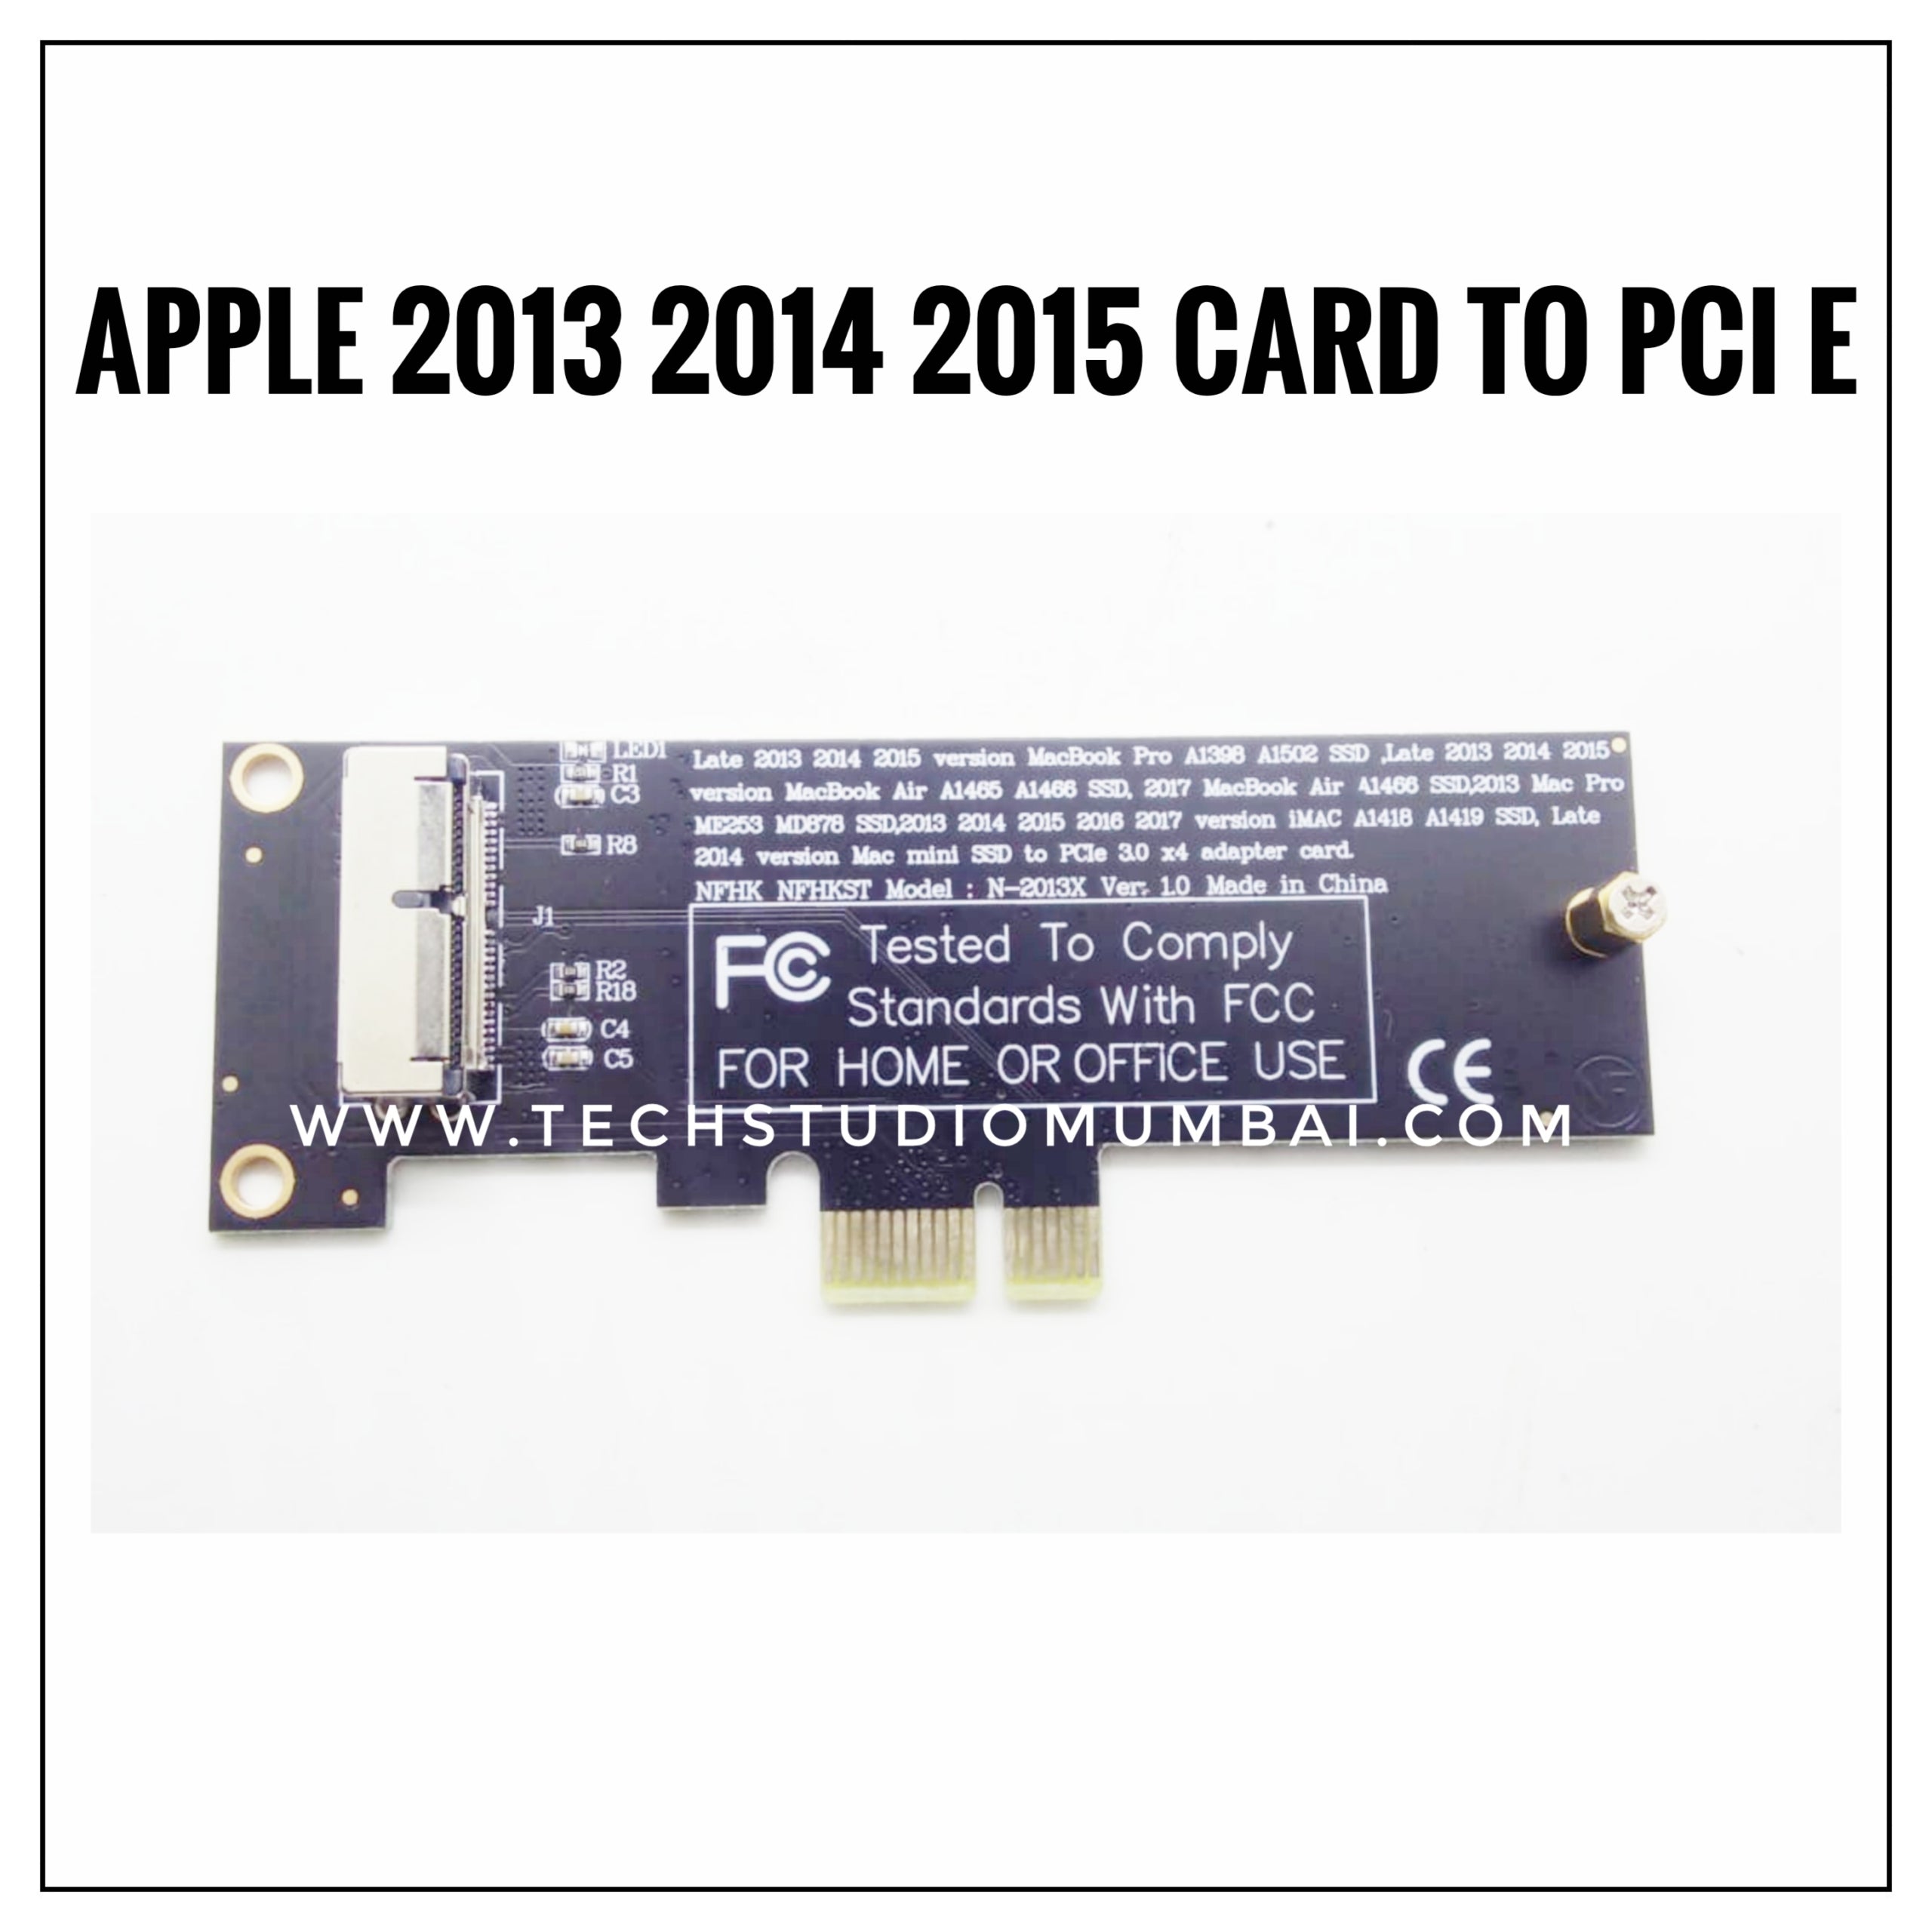 Apple 2013 2014 2015 card to PCI-E